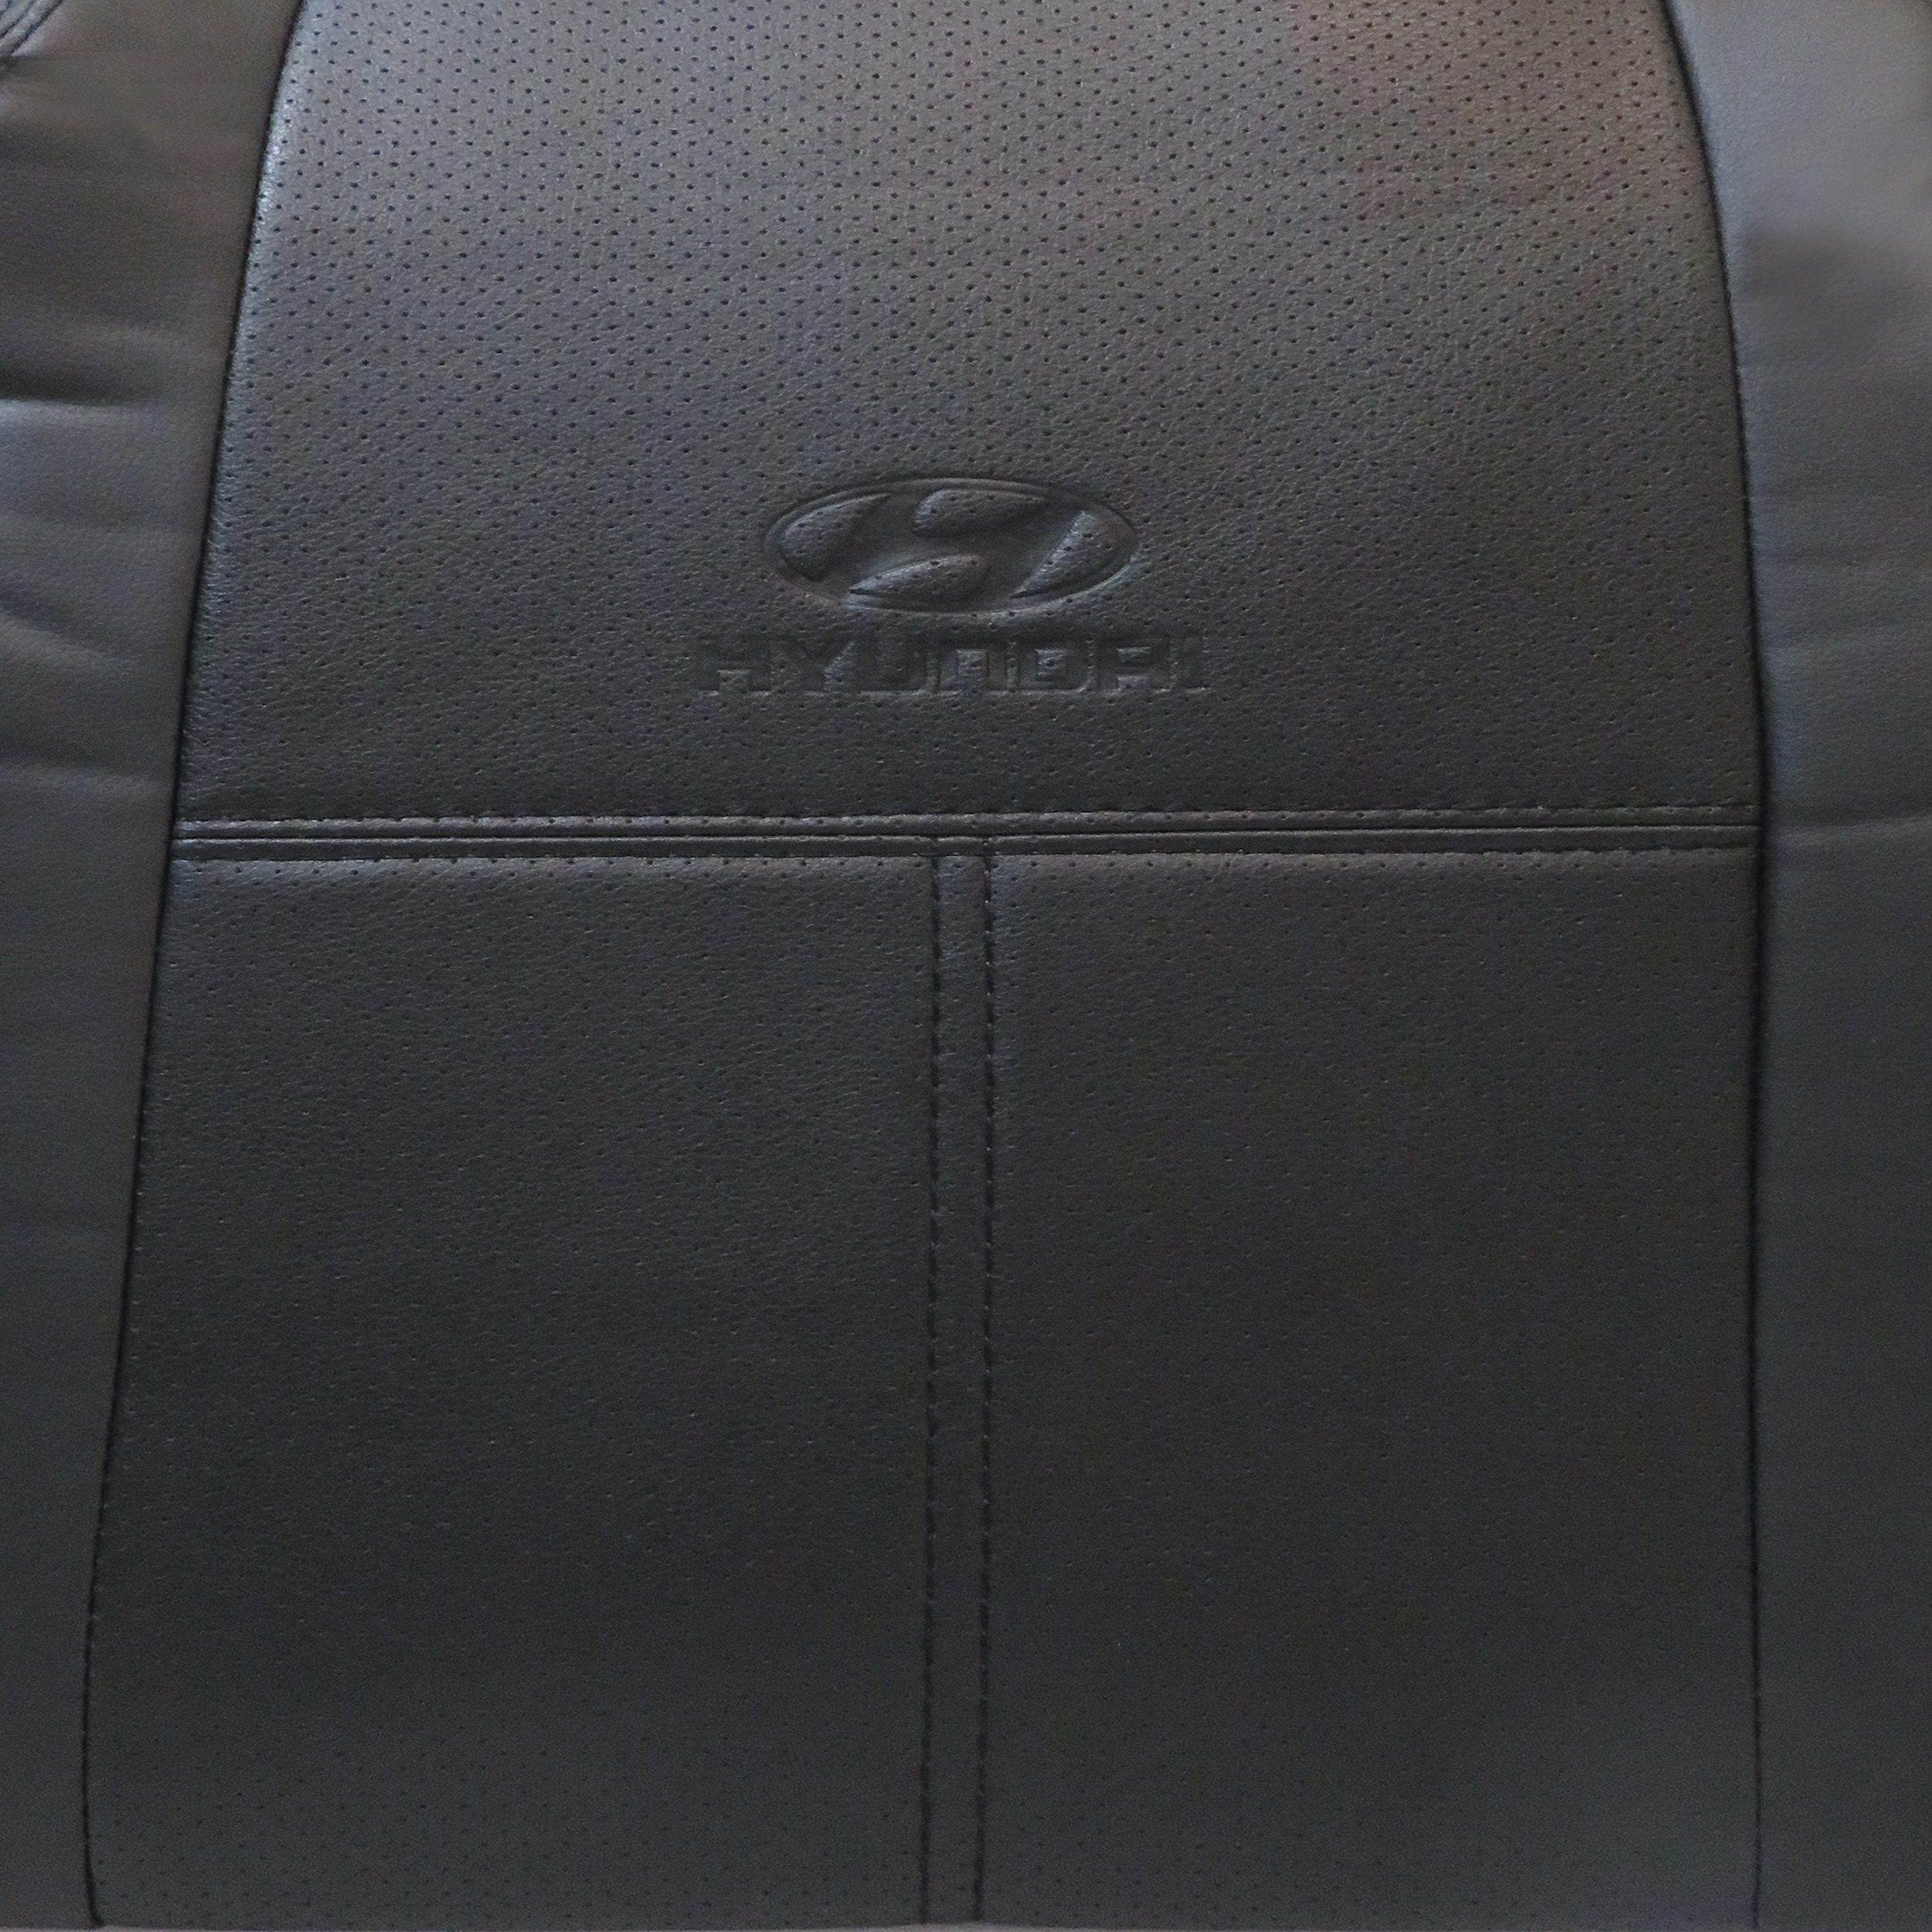 روکش صندلی خودرو مدل AT01 مناسب برای هیوندای آوانته